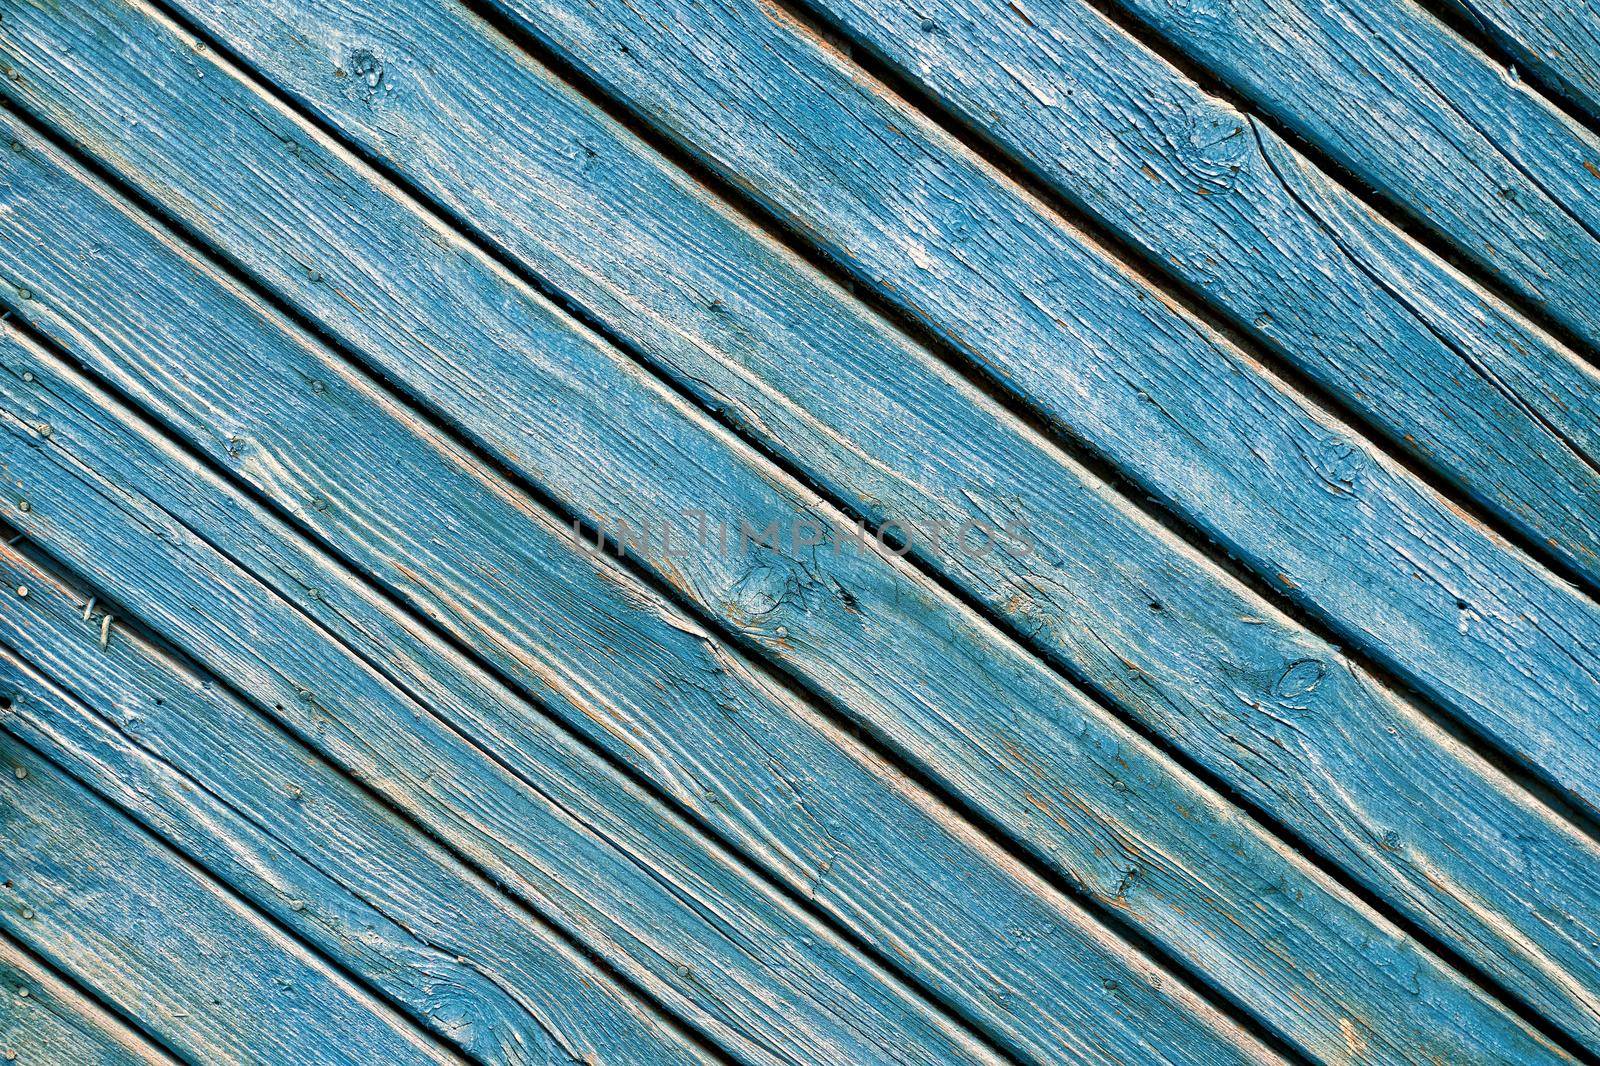 Retro blue wooden door textured background